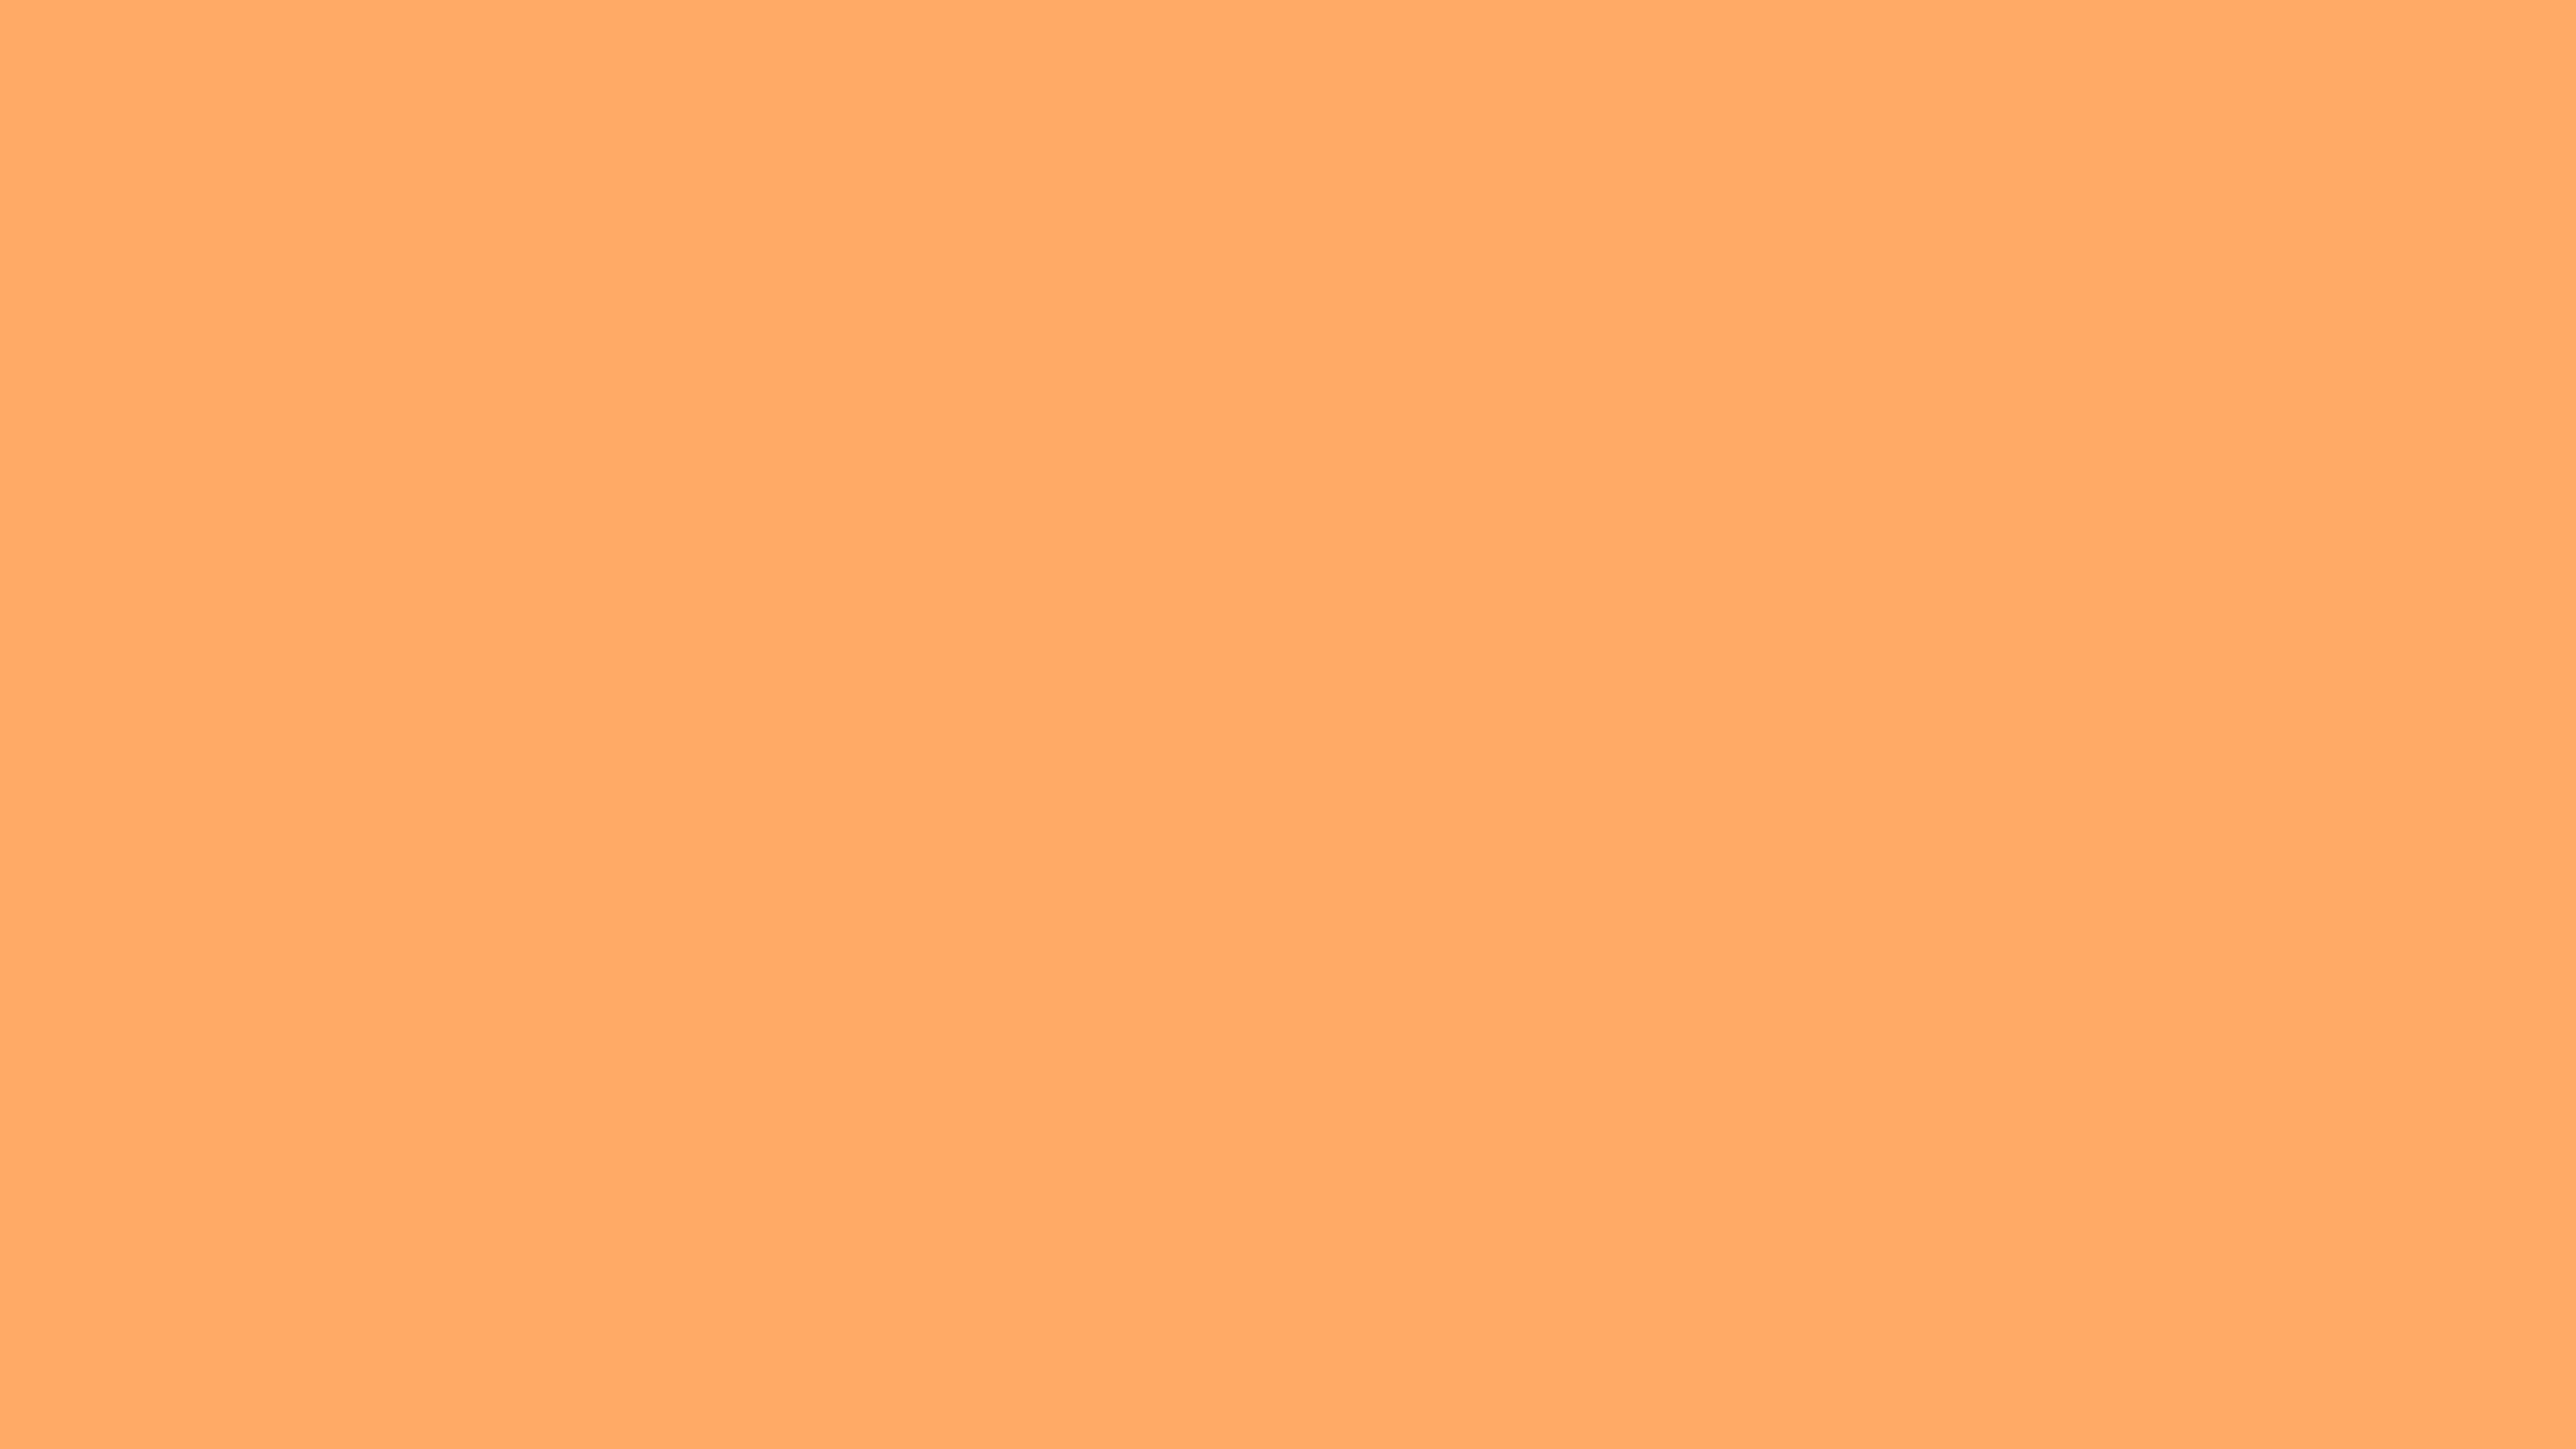 Mã màu cam trong suốt là sự kết hợp hoàn hảo giữa sự tối giản và năng lượng mạnh mẽ. Tìm hiểu thêm về mã màu này với hình ảnh \